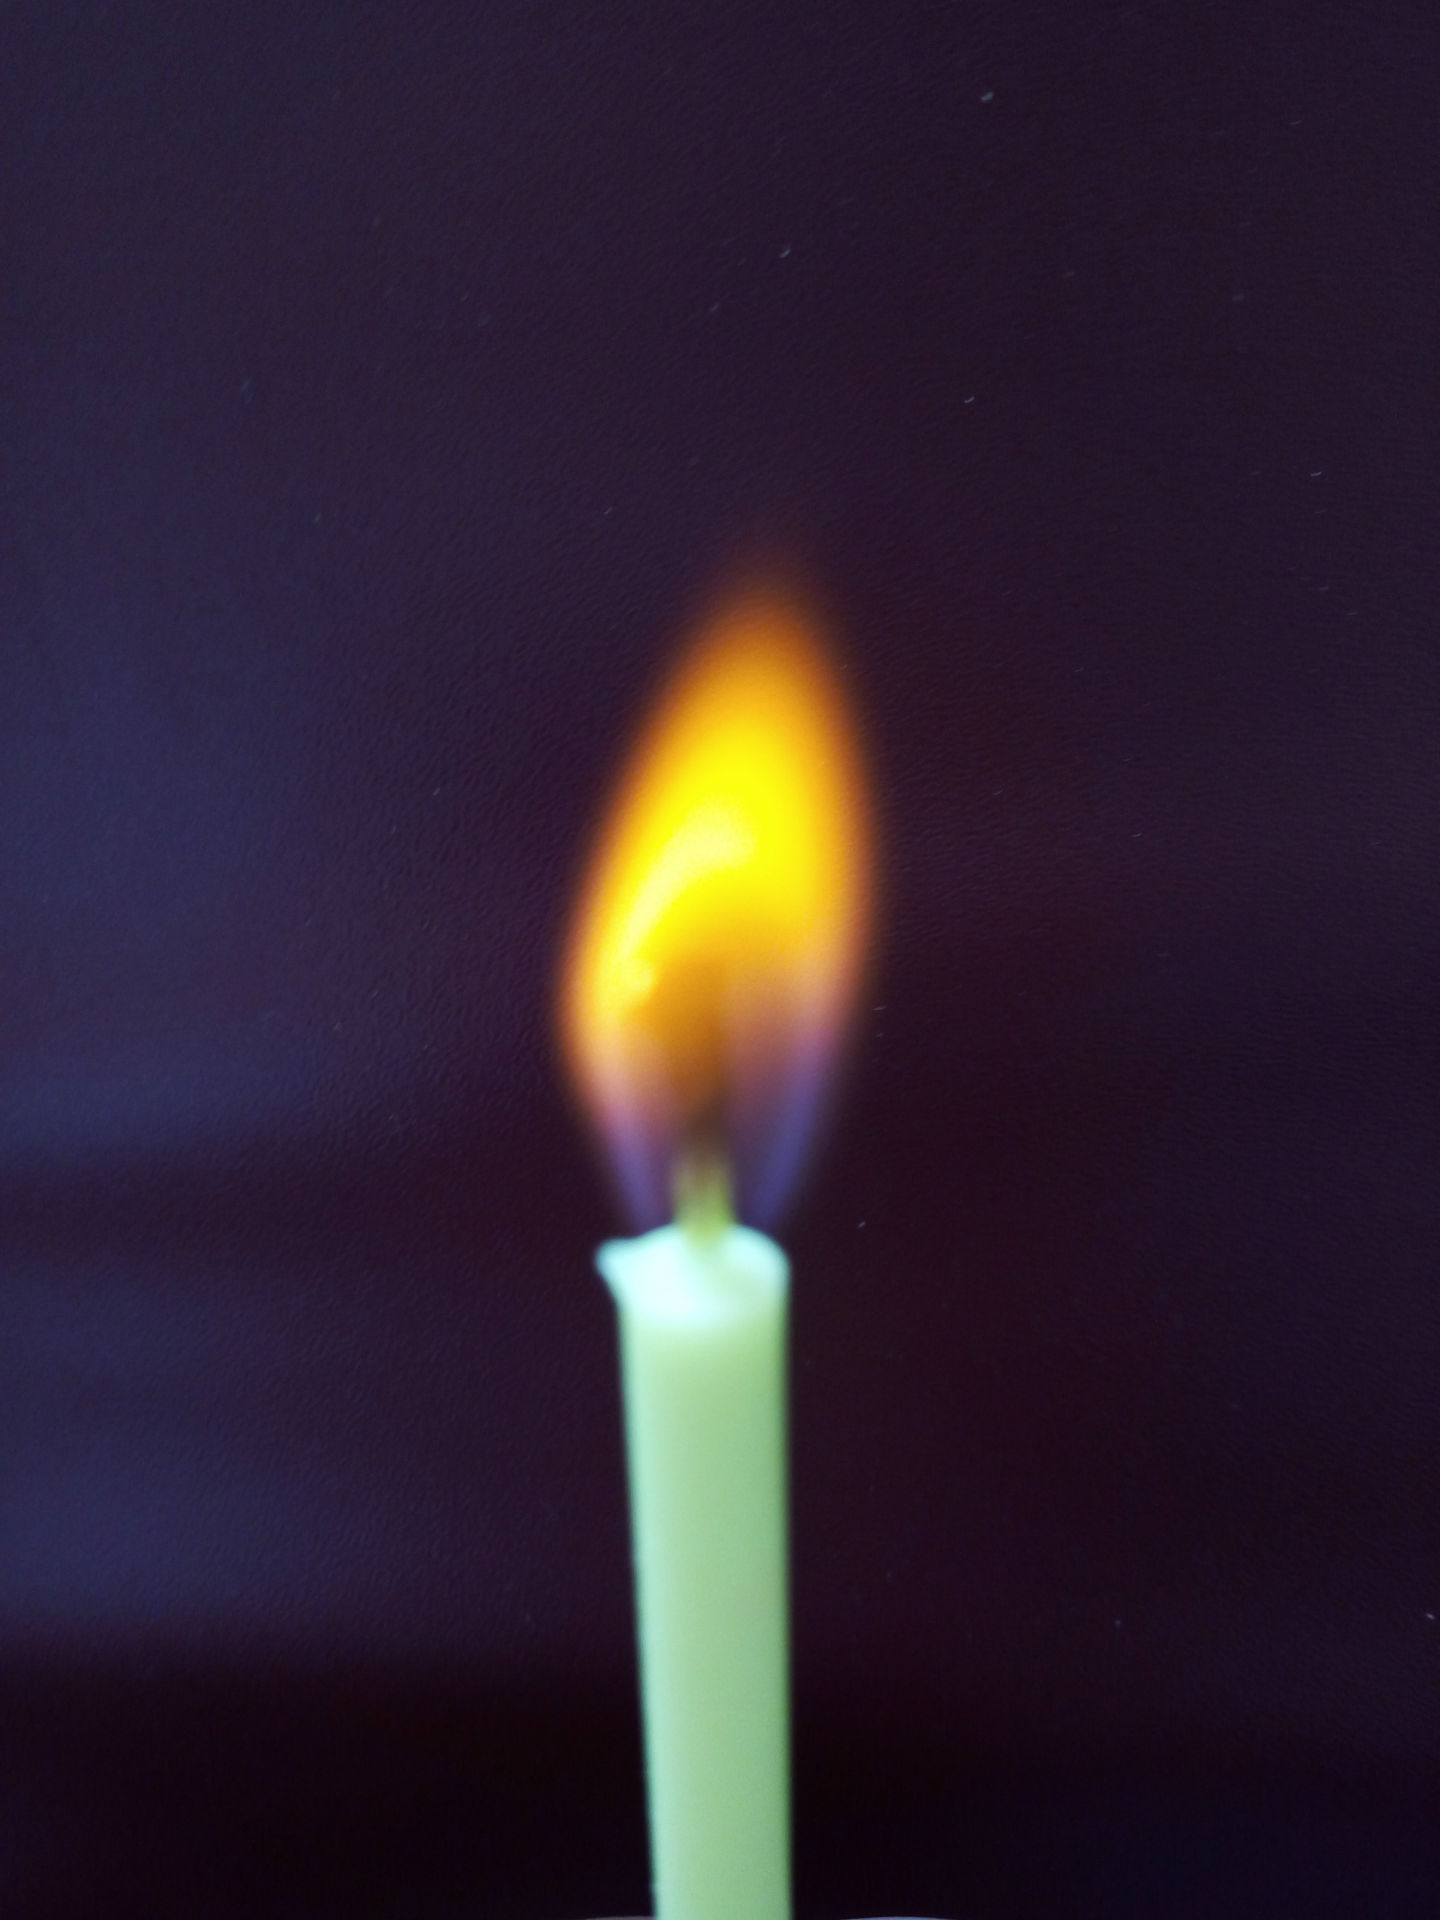 彩色火焰生日蜡烛 蛋糕房创意蜡烛 节庆用品 彩色蜡烛-阿里巴巴